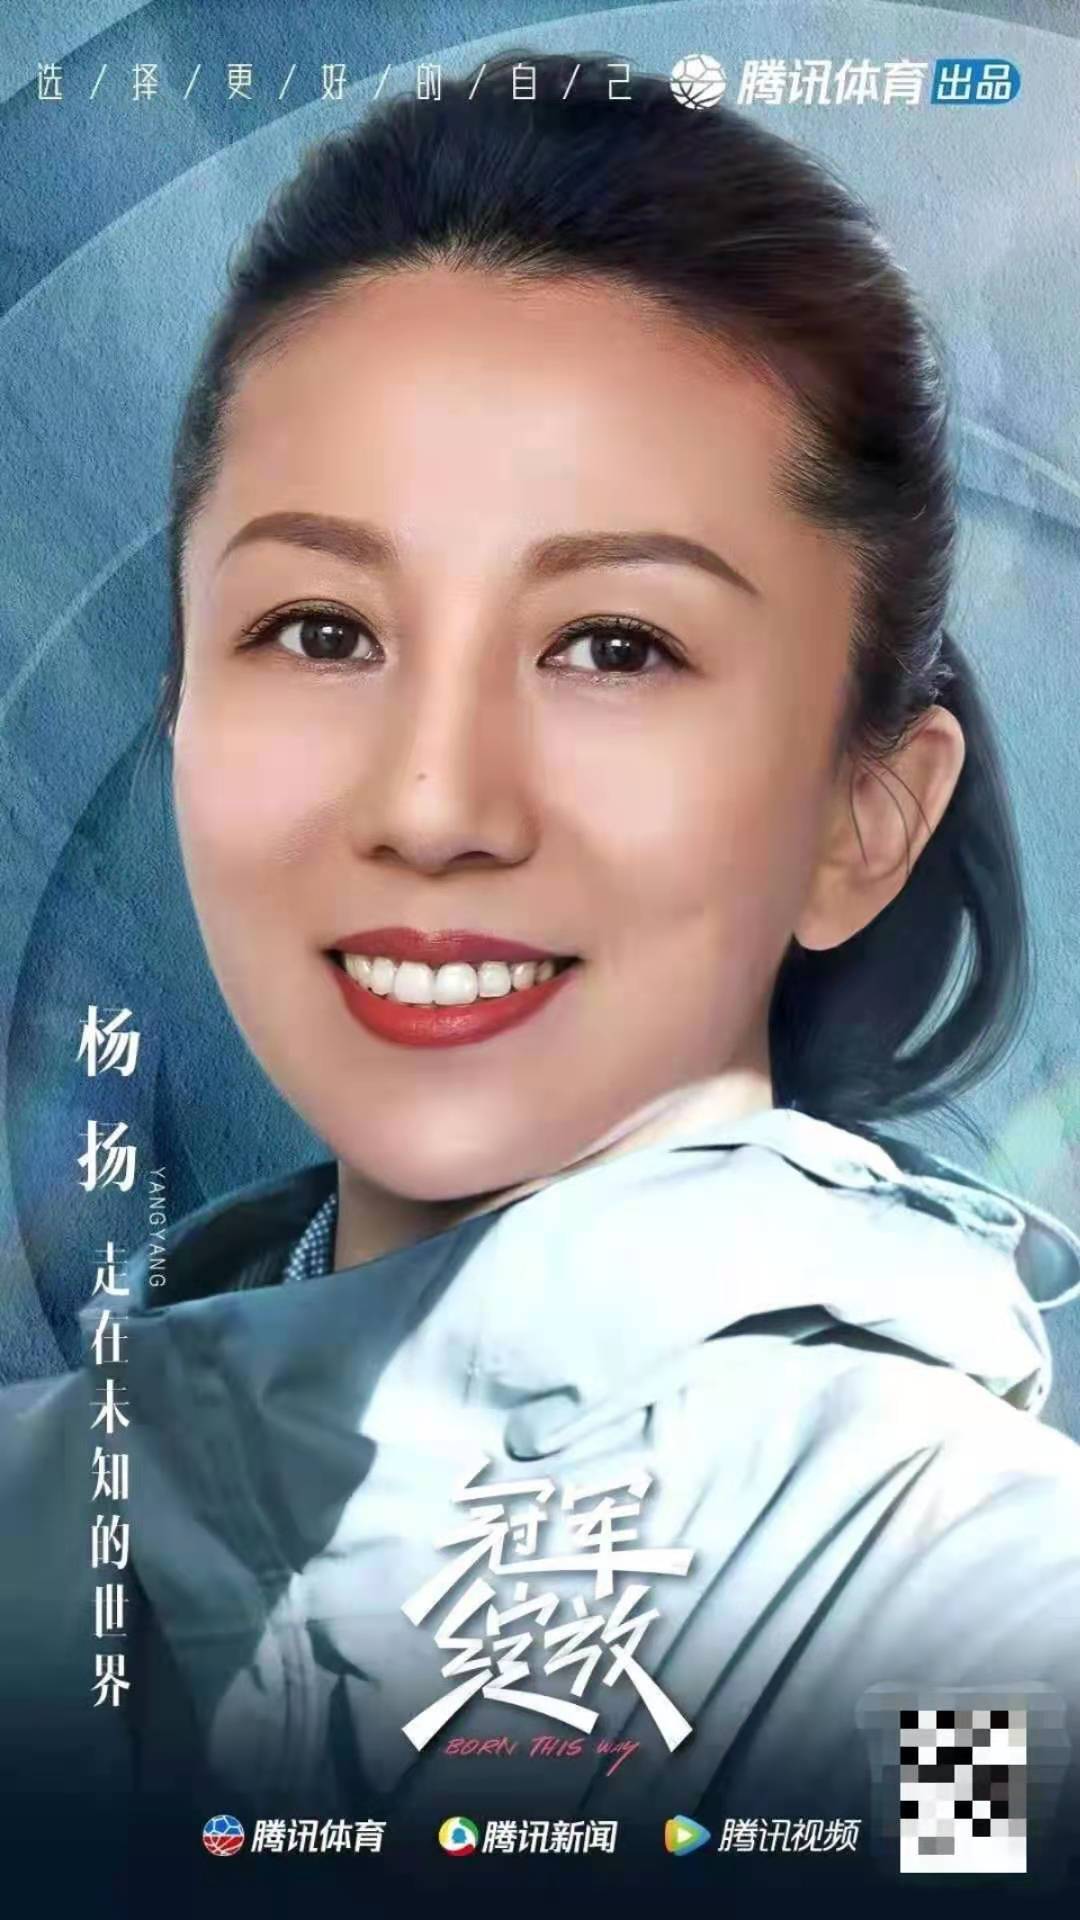 "冰雪女王"杨扬纪录片「冠军绽放」上线,以热爱成就生